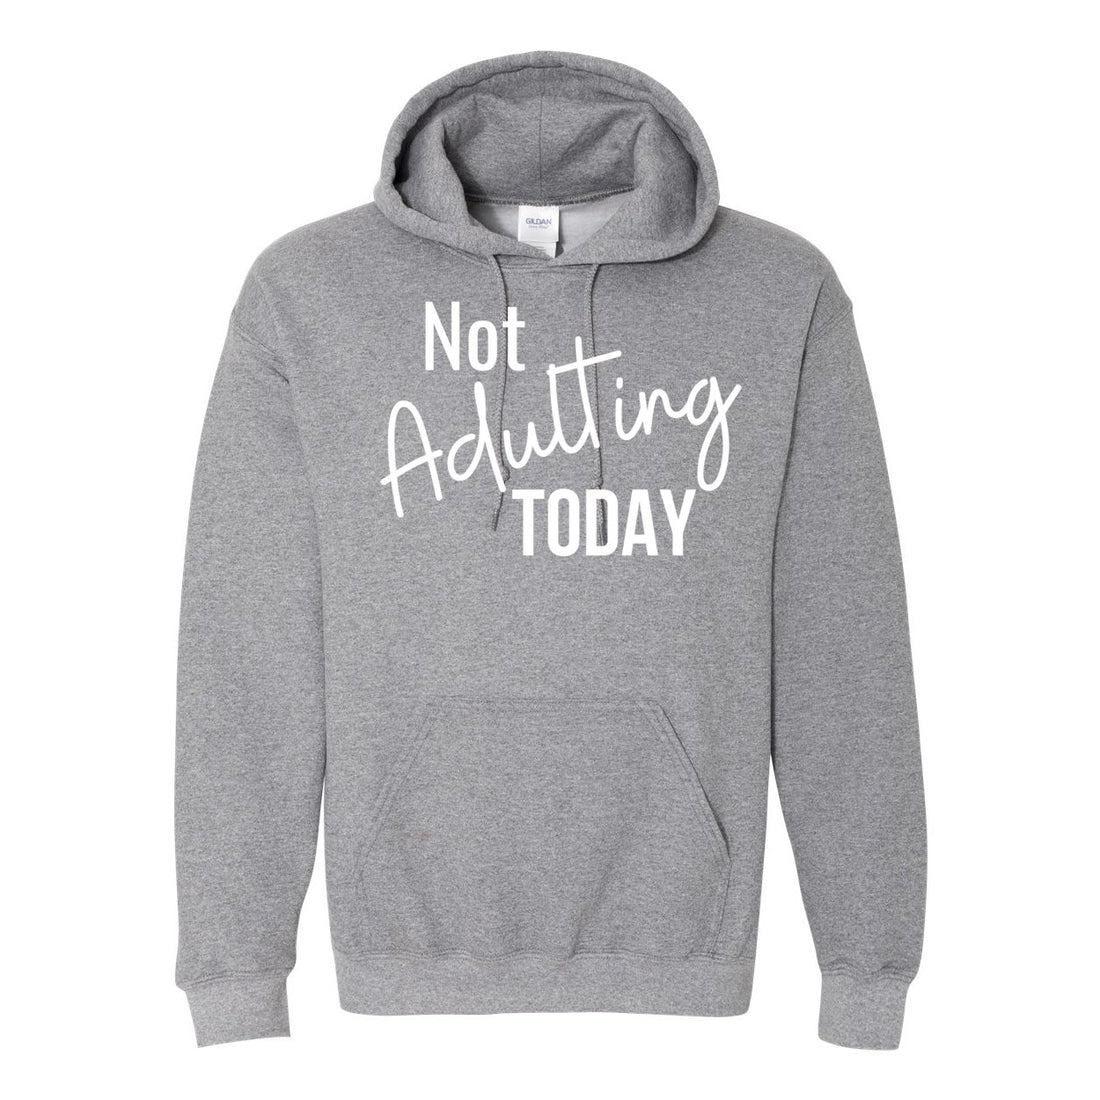 Not Adulting Today Hooded Sweatshirt - Sweaters/Hoodies - Positively Sassy - Not Adulting Today Hooded Sweatshirt